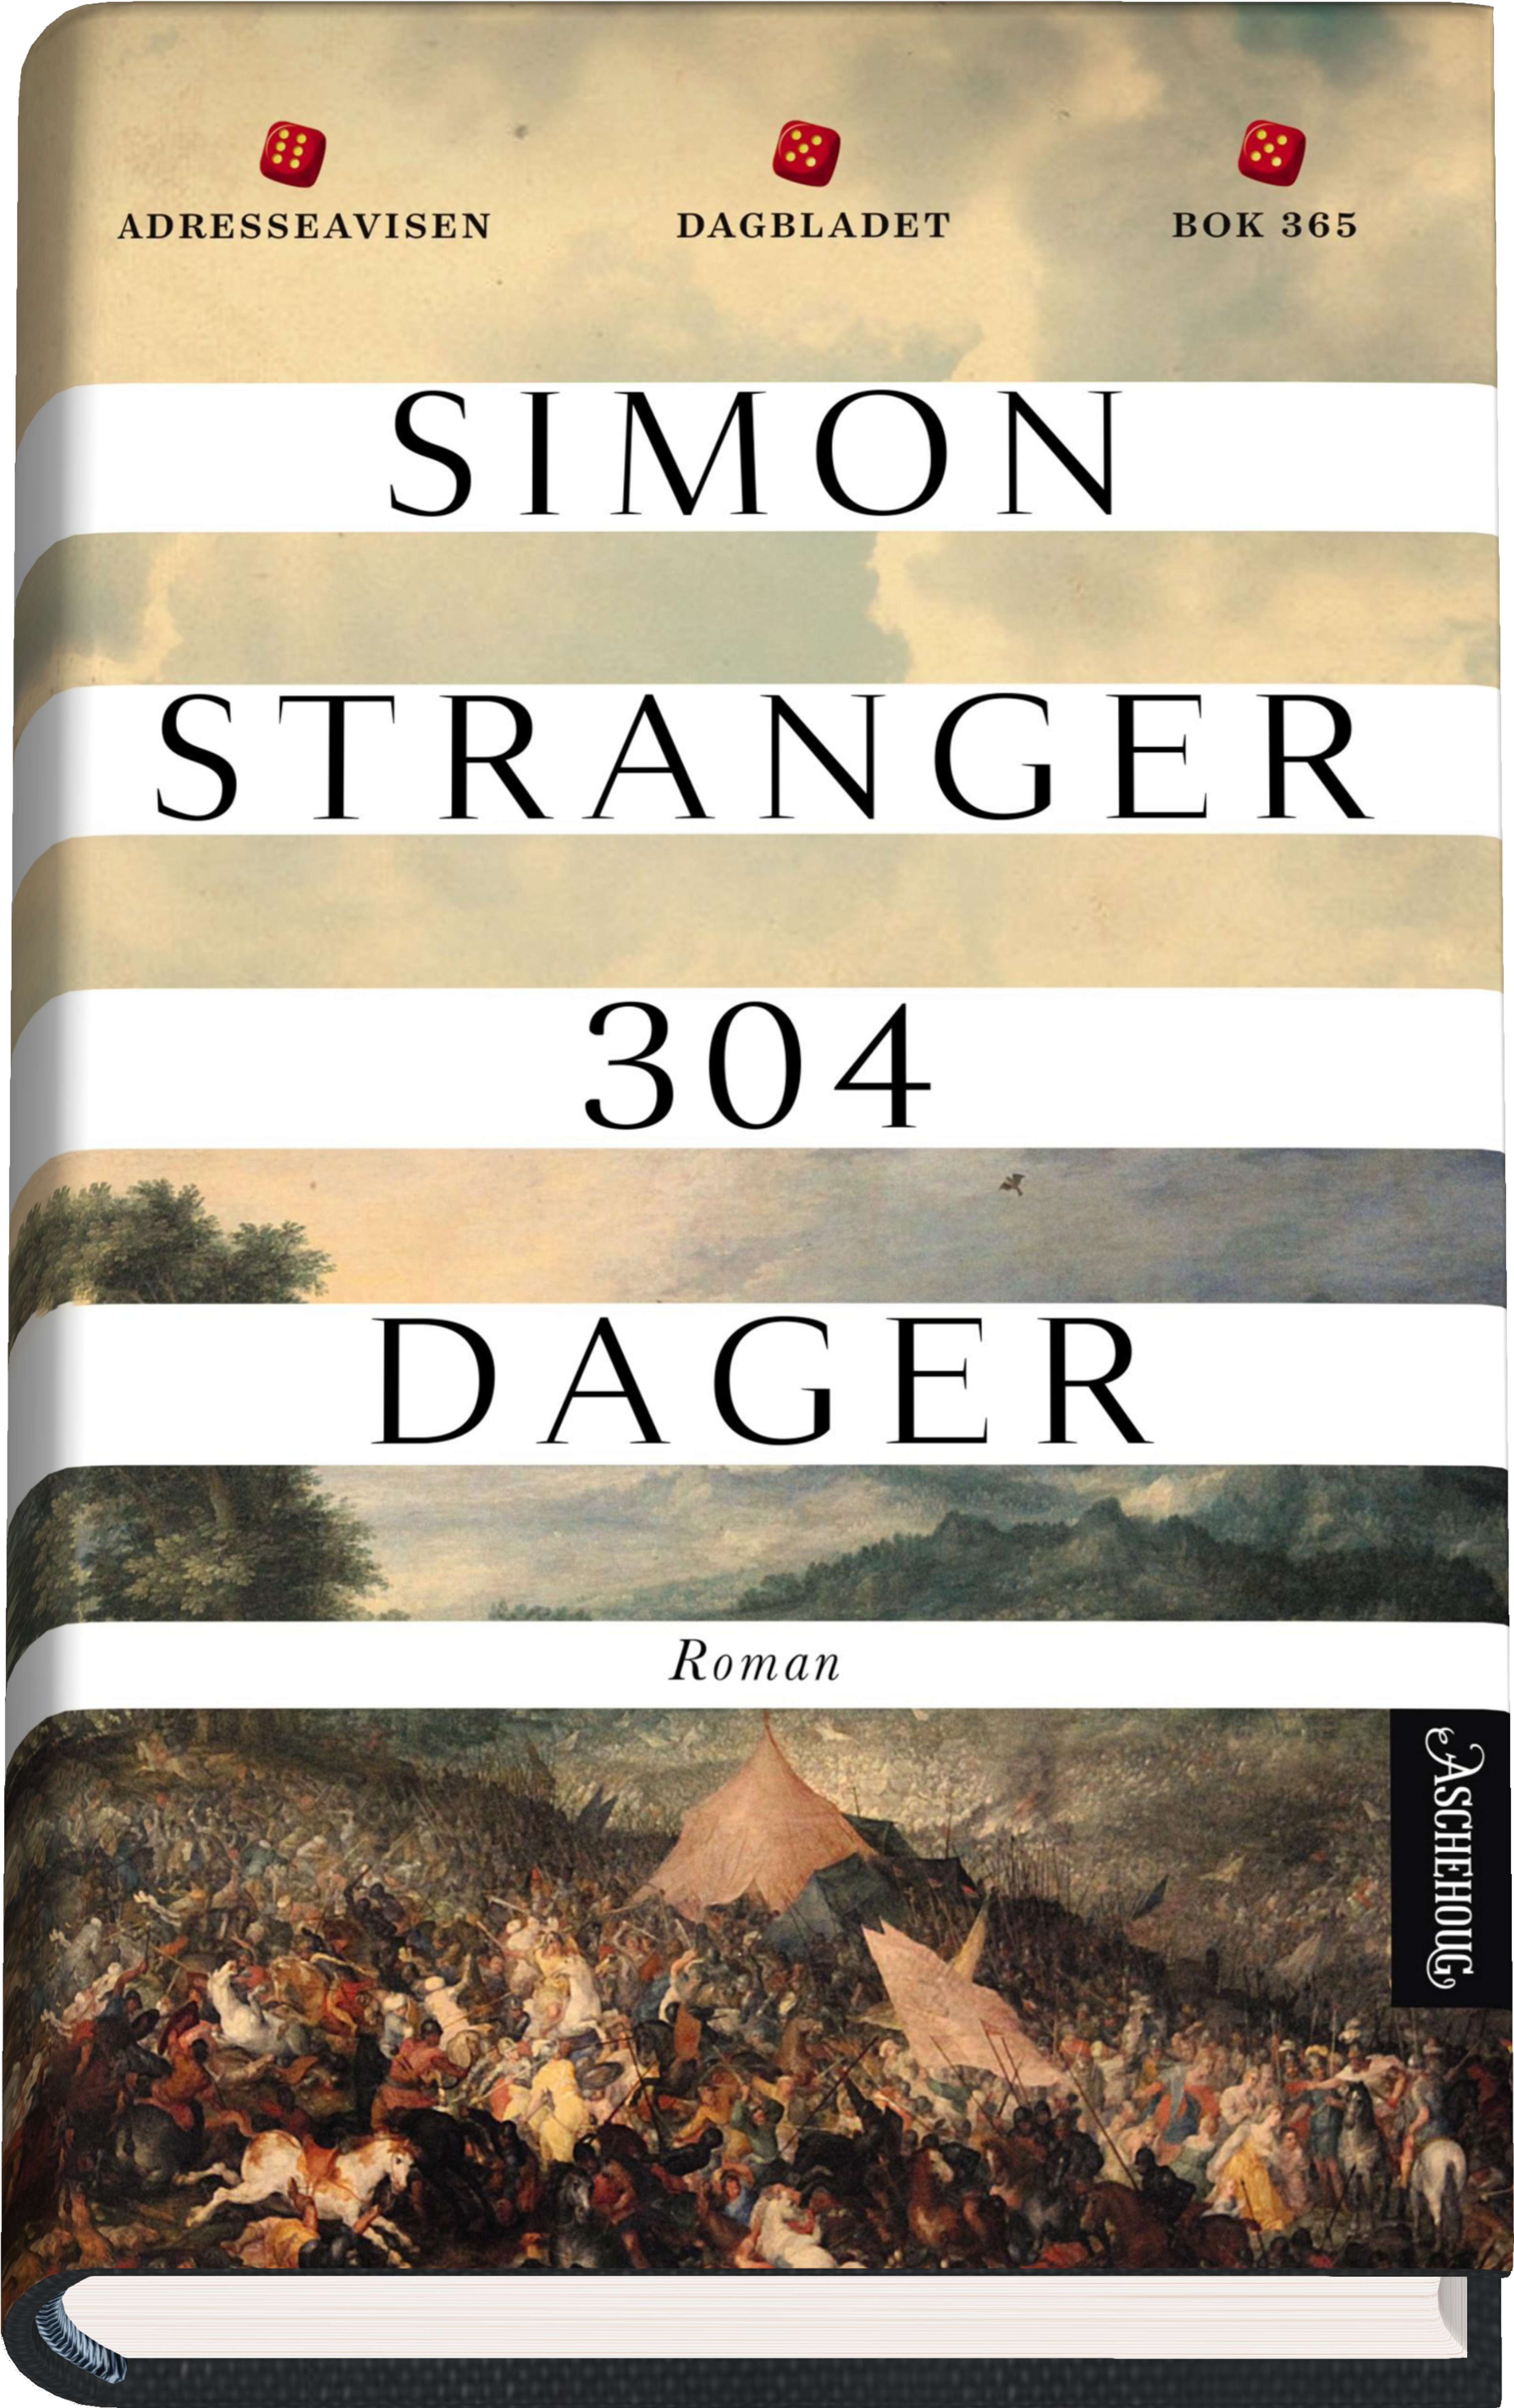 Simon Stranger fikk stor suksess med boken 304 dager